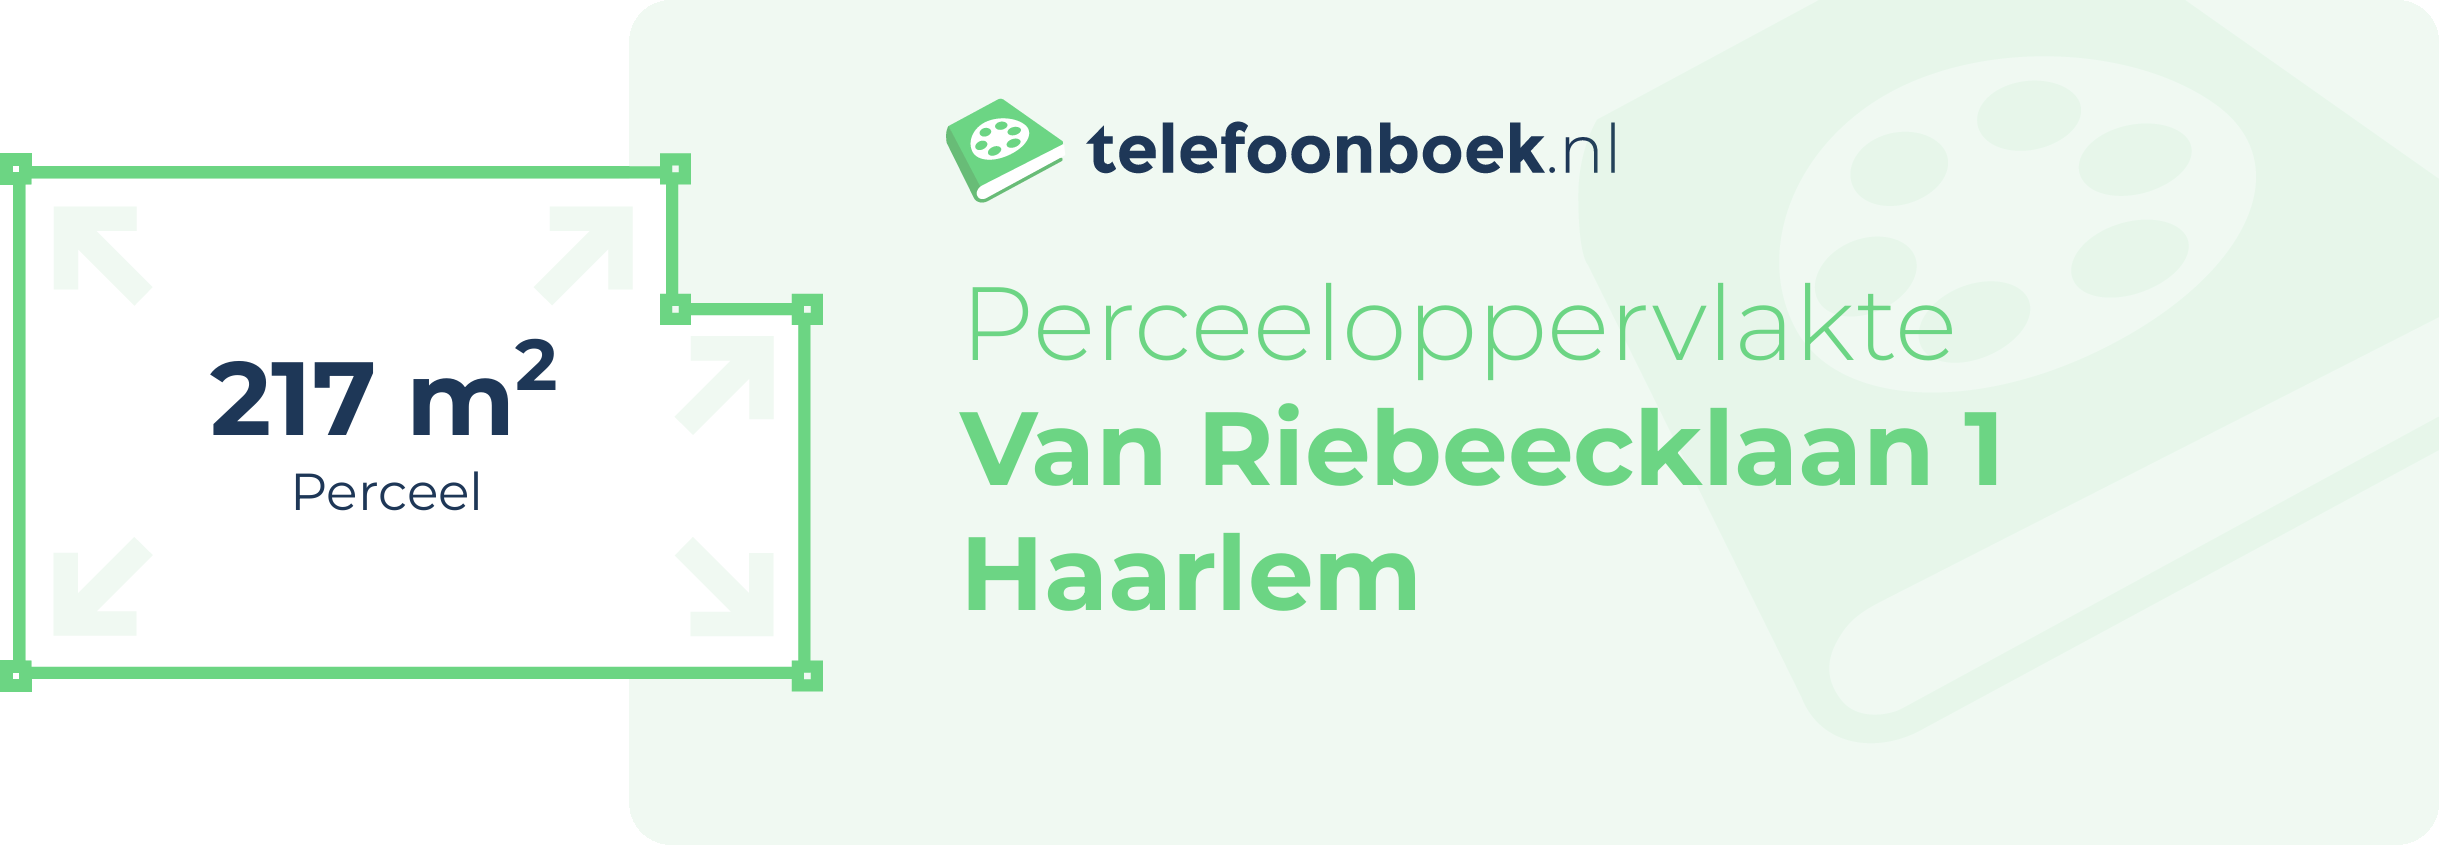 Perceeloppervlakte Van Riebeecklaan 1 Haarlem